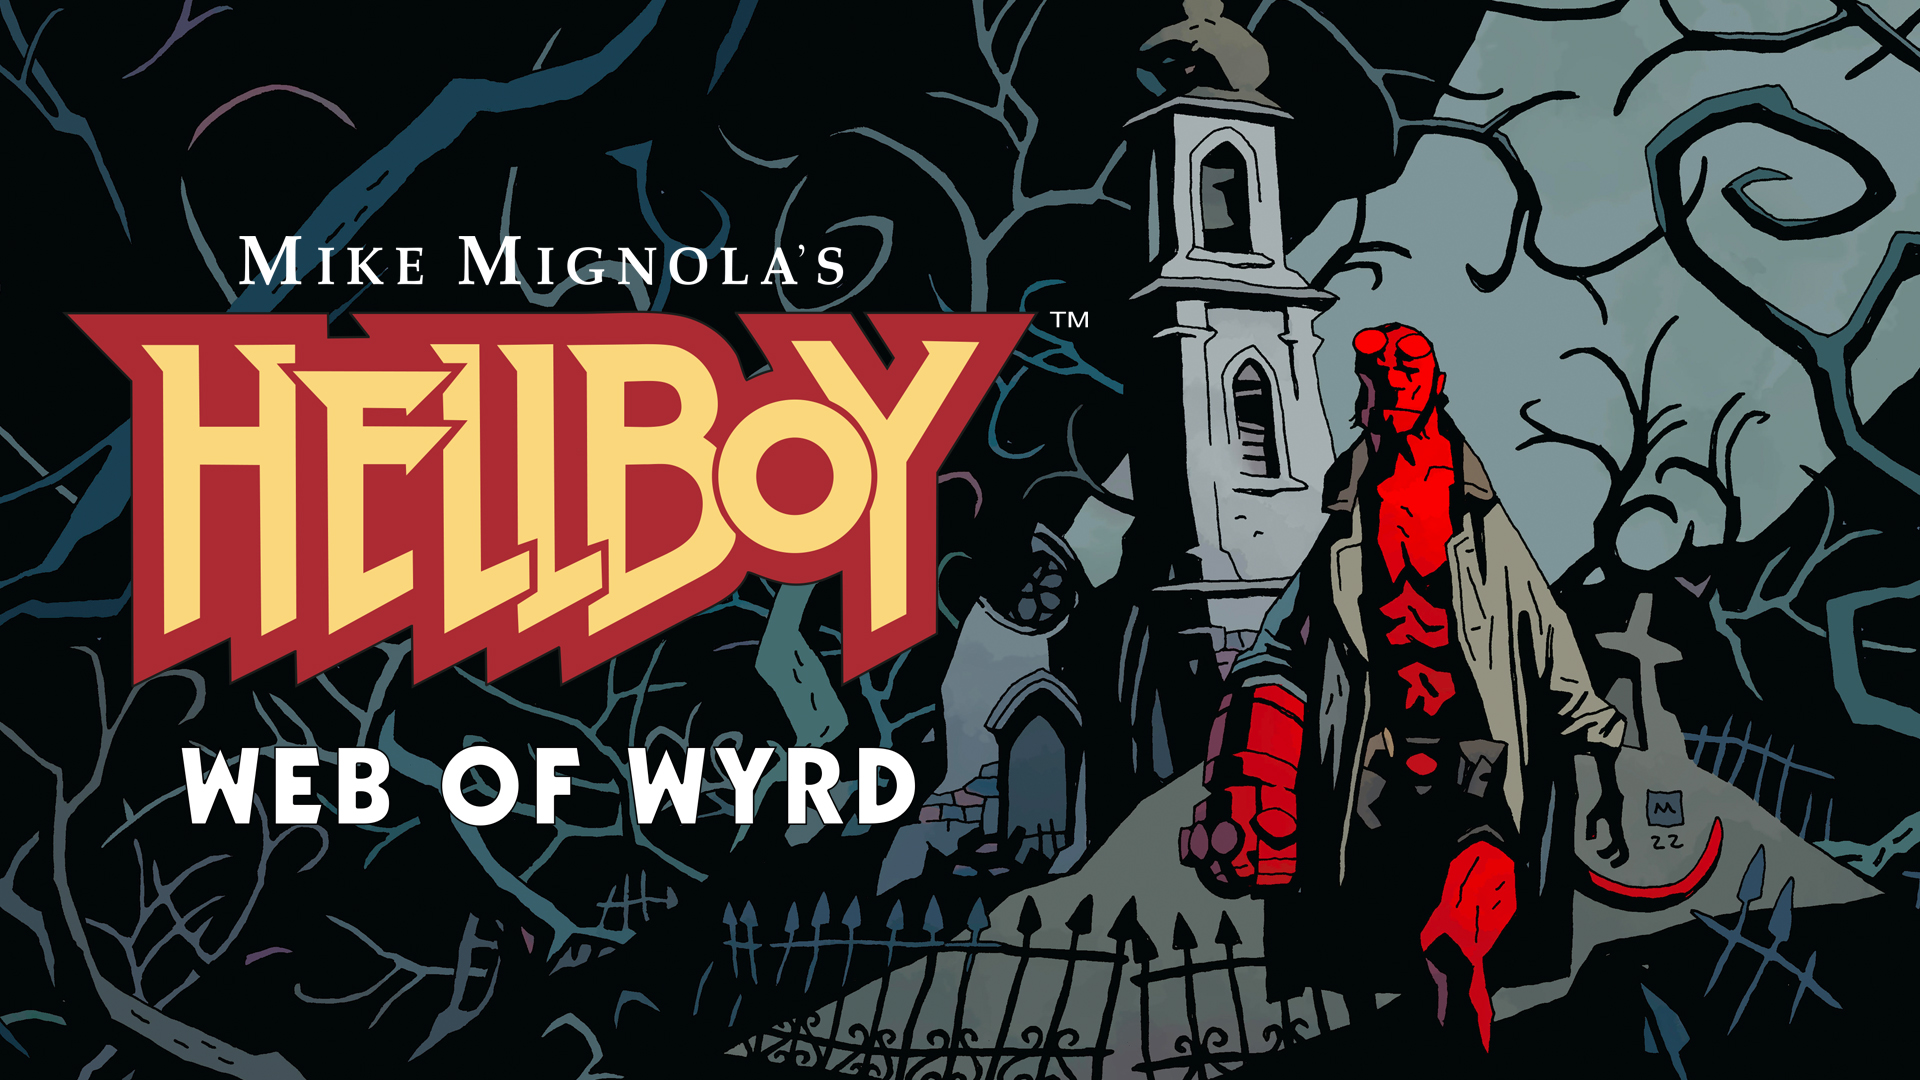 Hellboy web of wyrd 2022 12 08 22 006 3